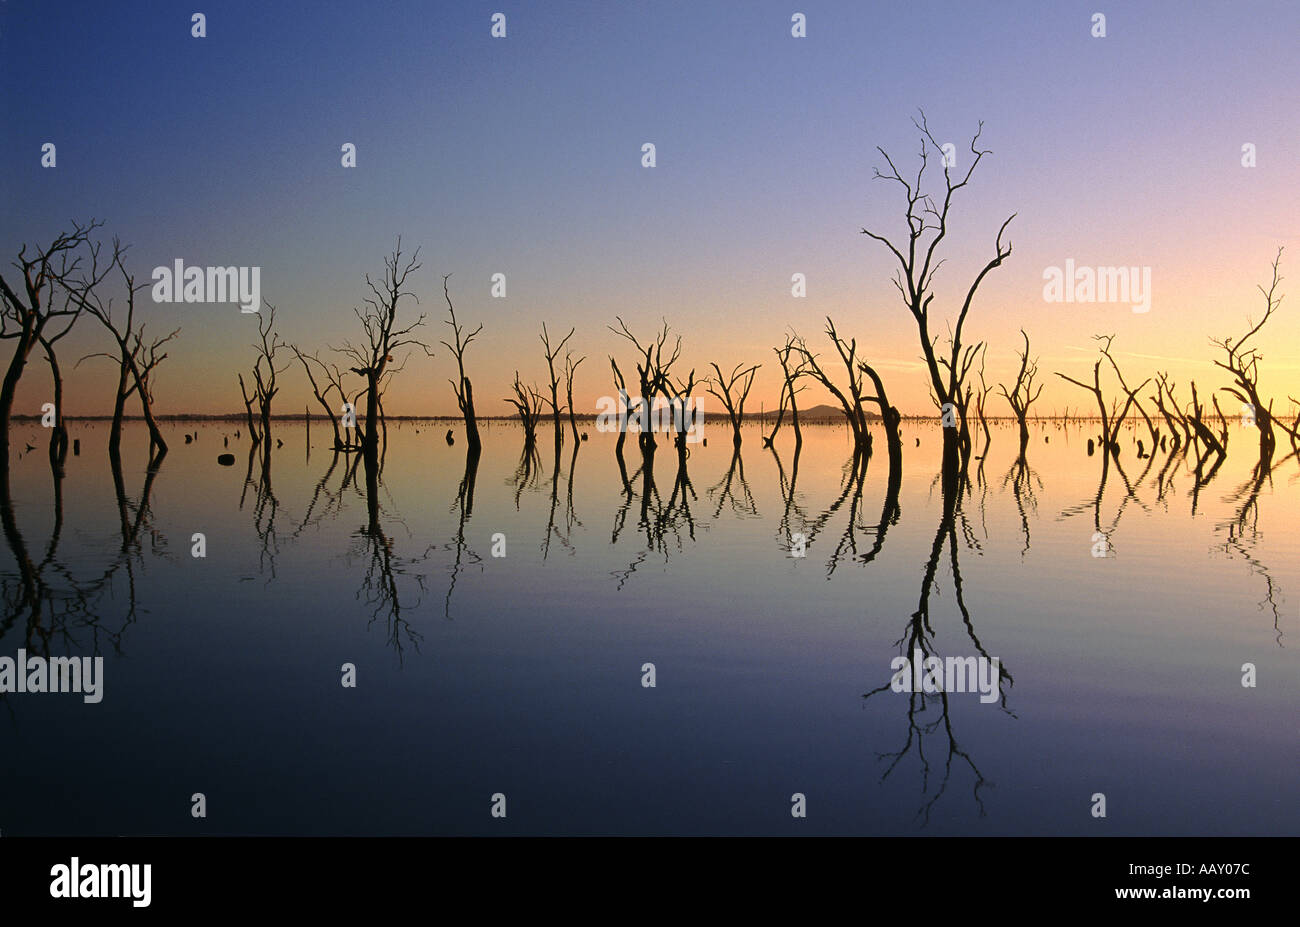 Dead trees in Kow Swamp Victoria Australia Stock Photo